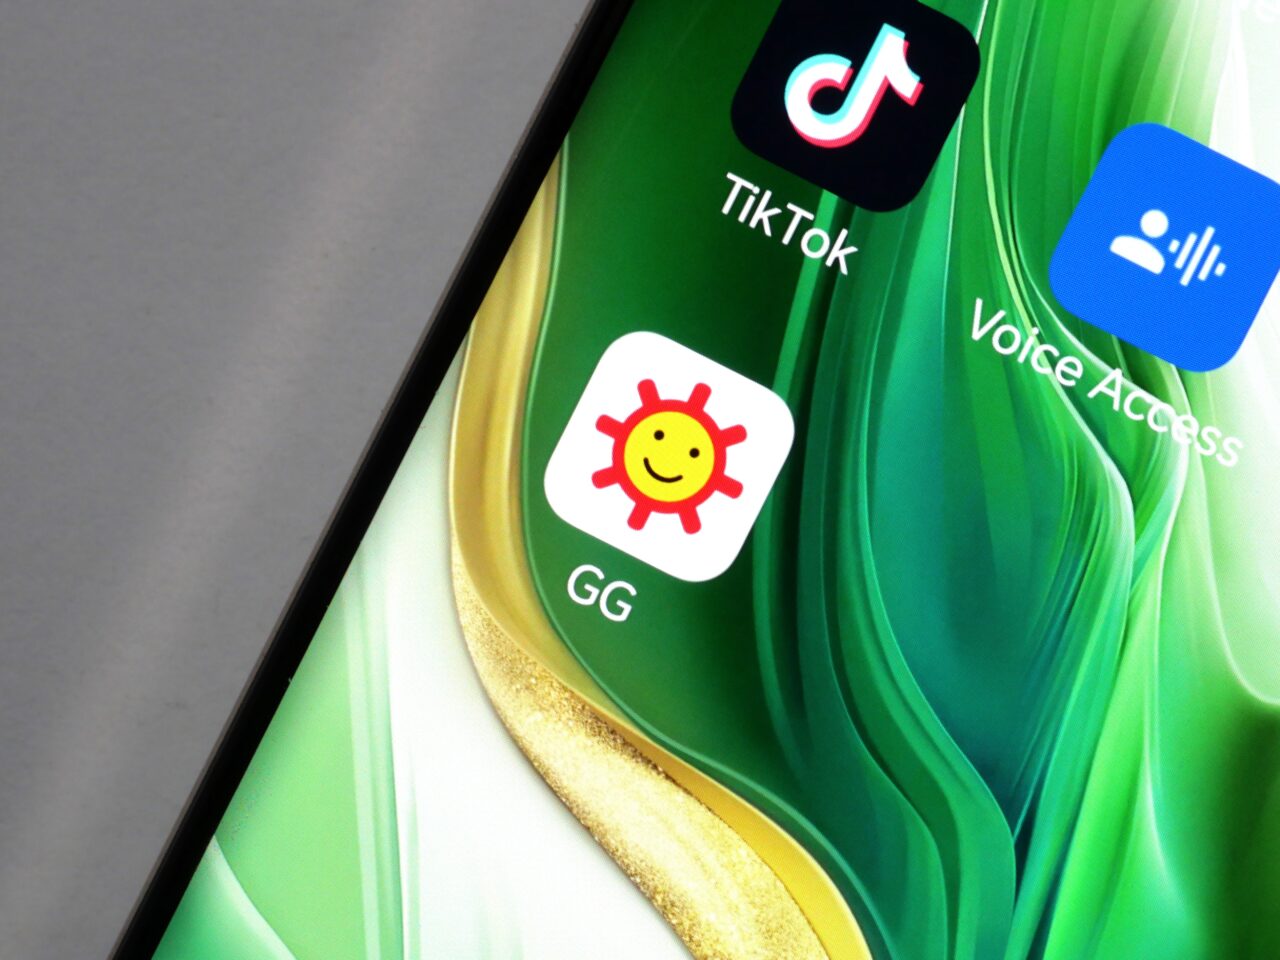 Ekran smartfona z aplikacjami TikTok, Voice Access i GG na zielonym tle.